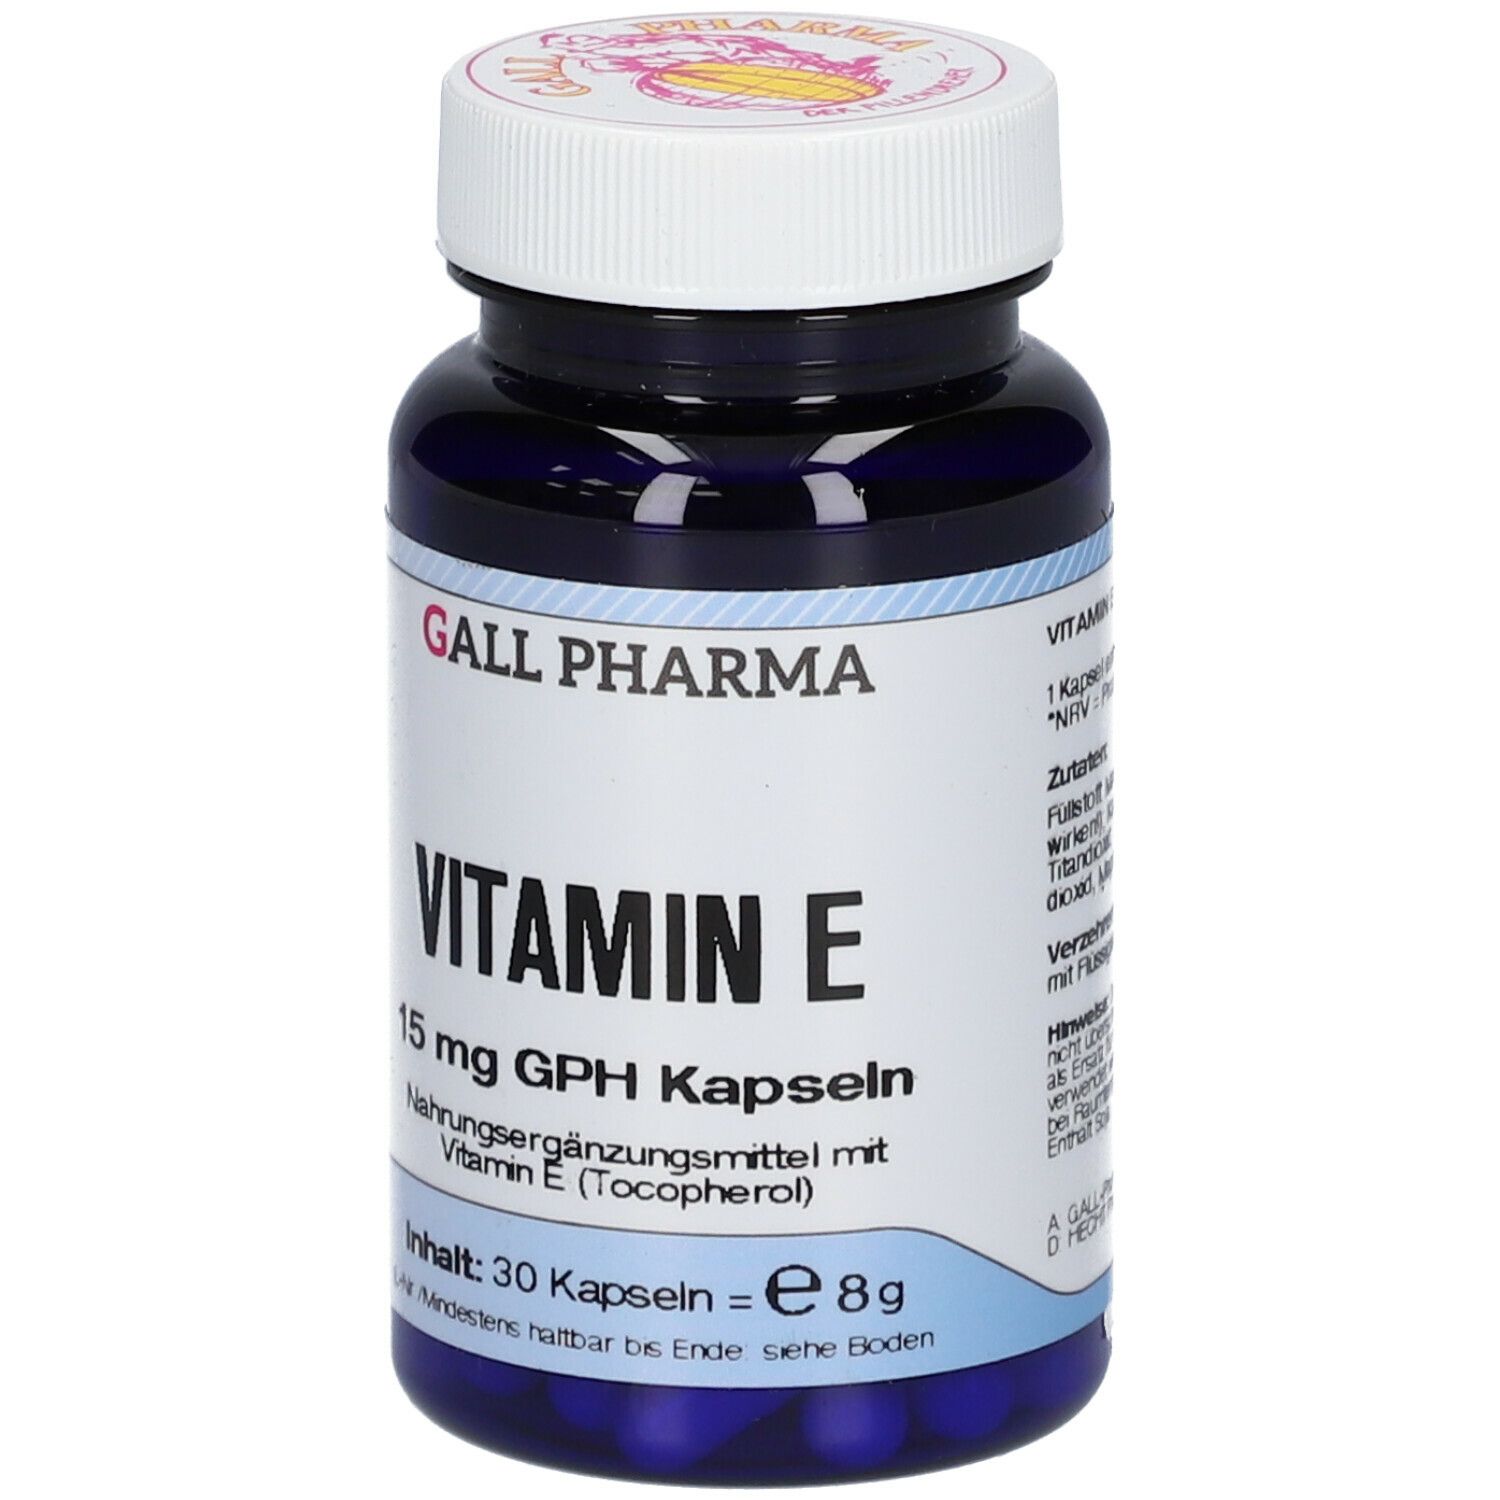 GALL PHARMA Vitamin E 15 mg